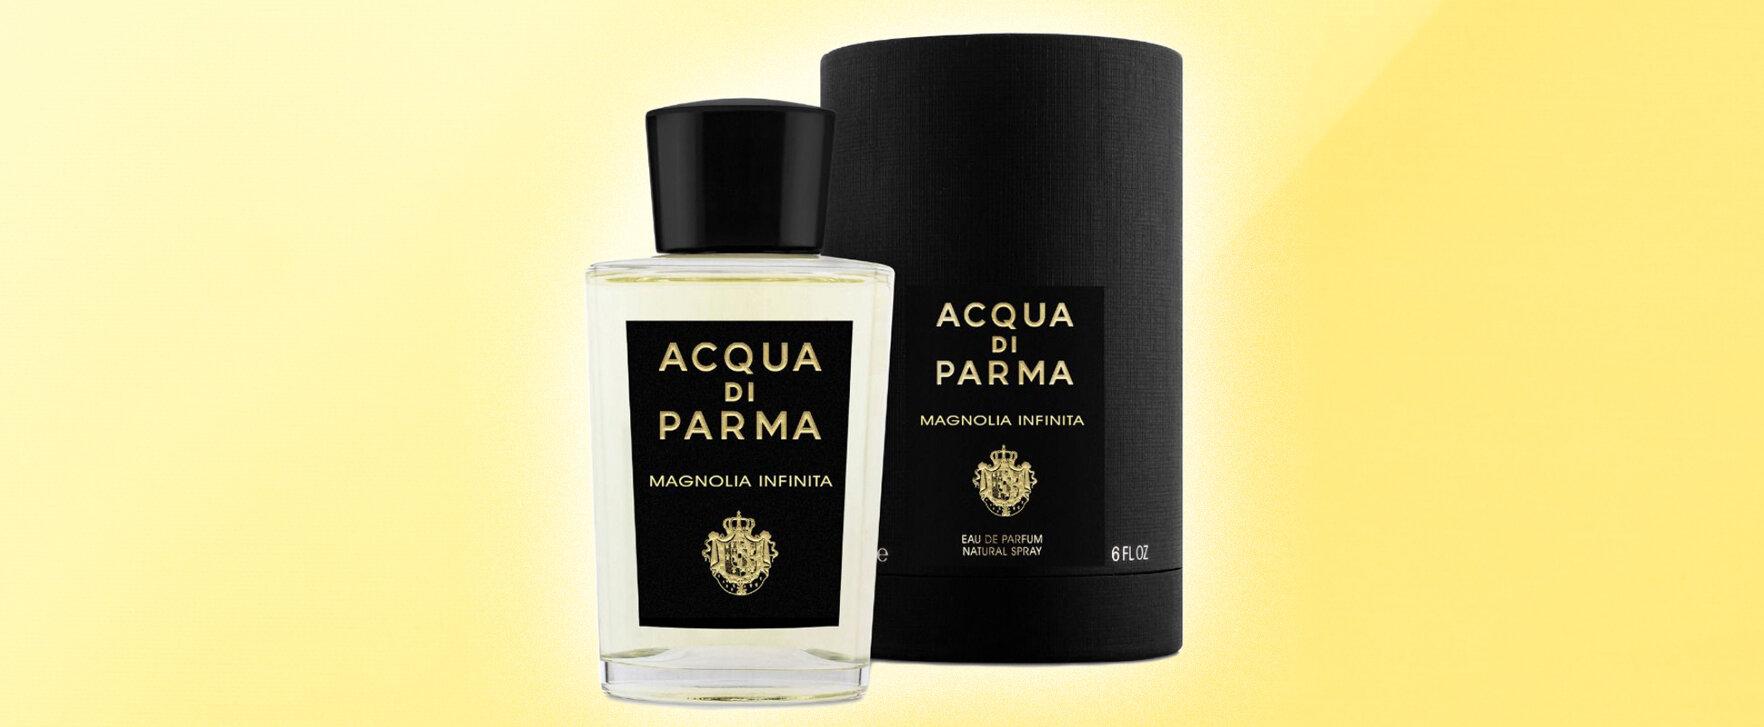 Magnolia Infinita - neuer Duft von Acqua di Parma